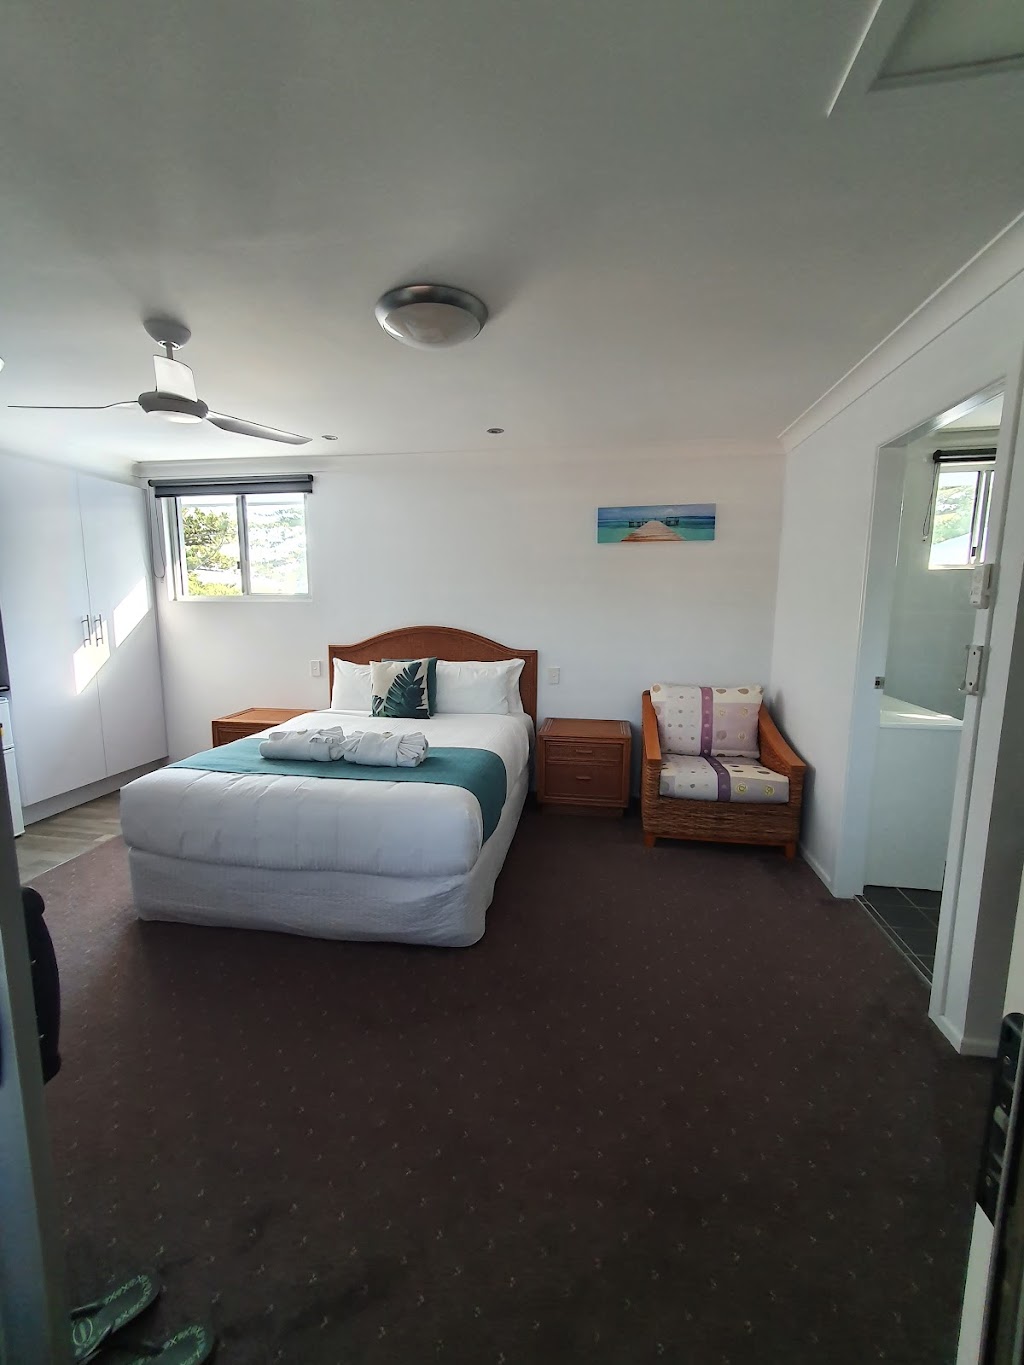 Adrift Apartments Yamba | lodging | 38 Wooli St, Yamba NSW 2464, Australia | 0499847700 OR +61 499 847 700